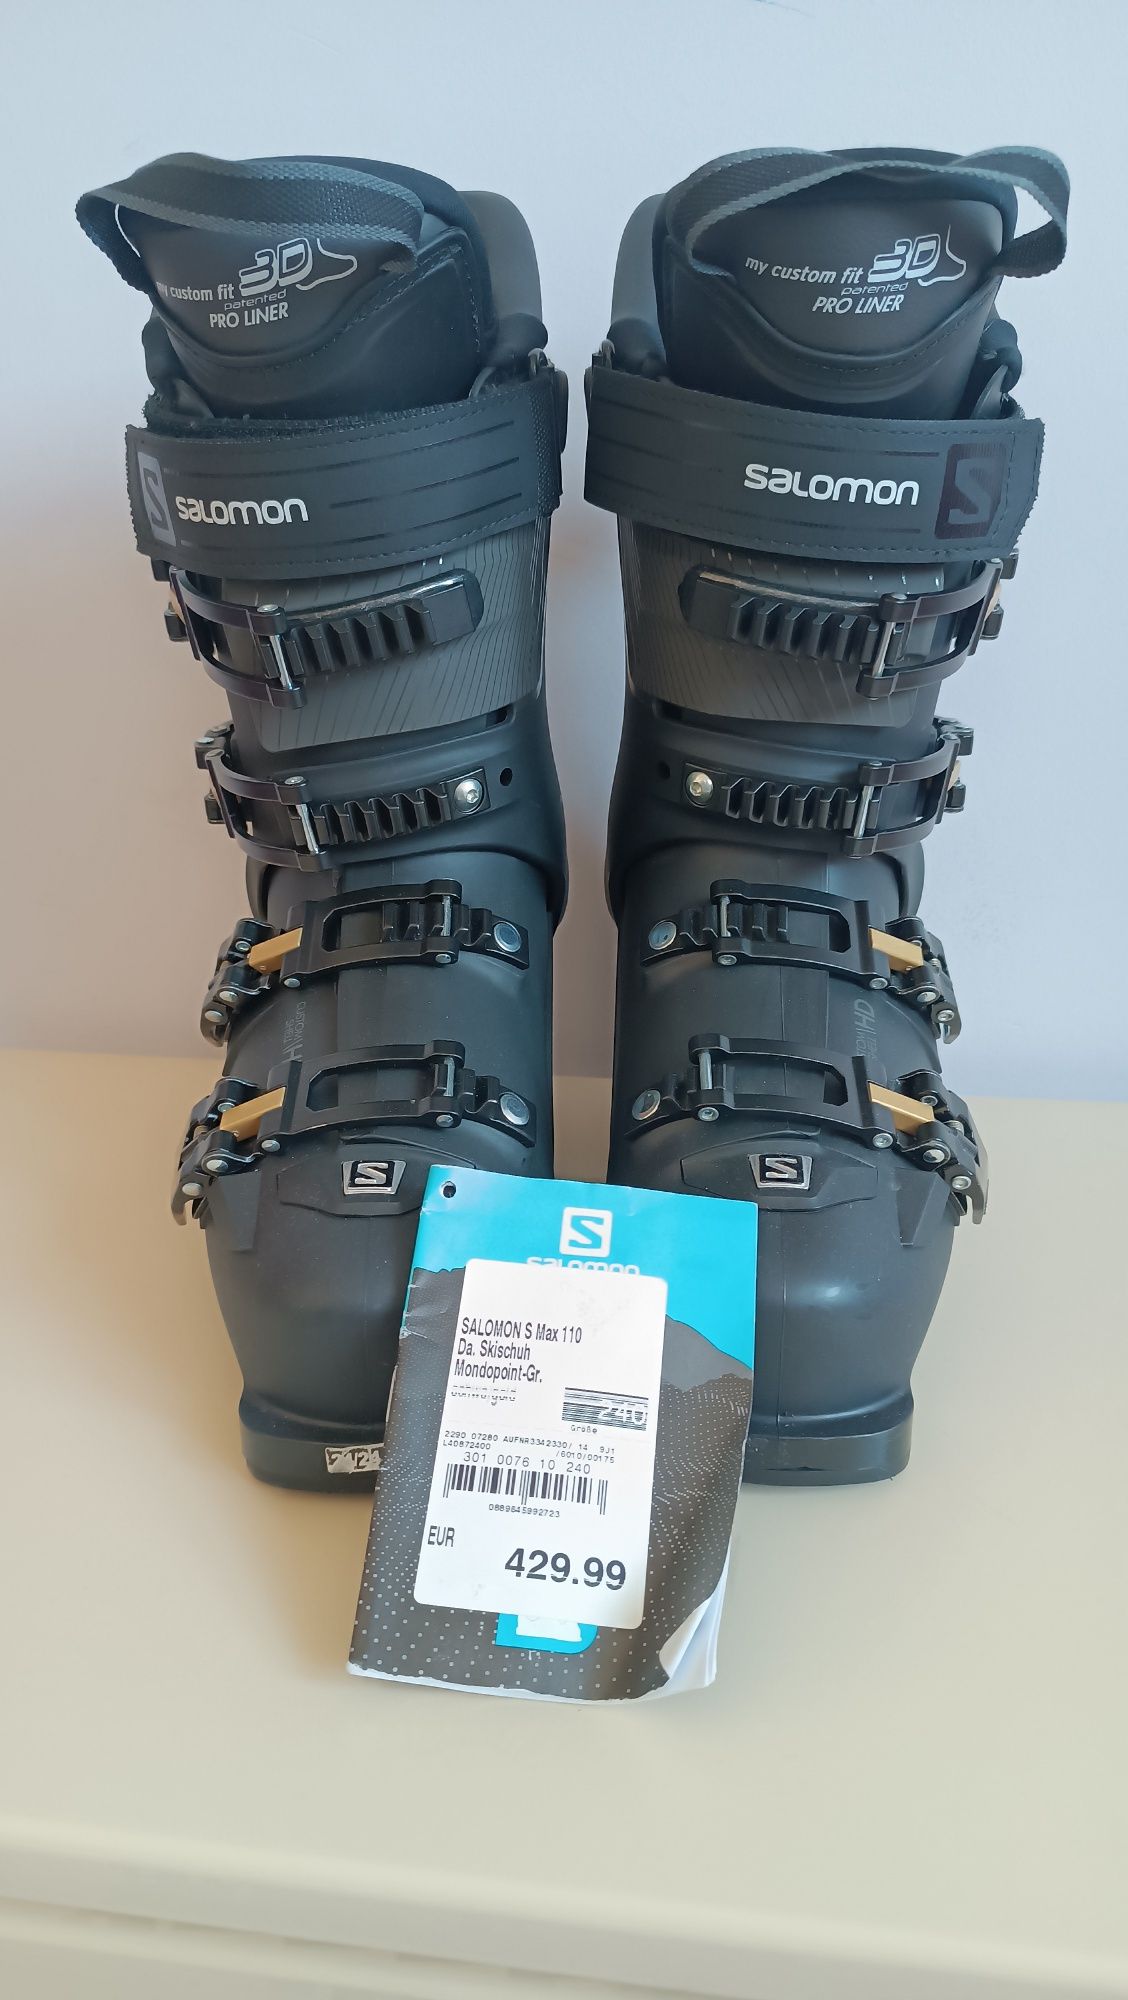 Nowe buty narciarskie Salomon damskie rozmiar 24-24,5